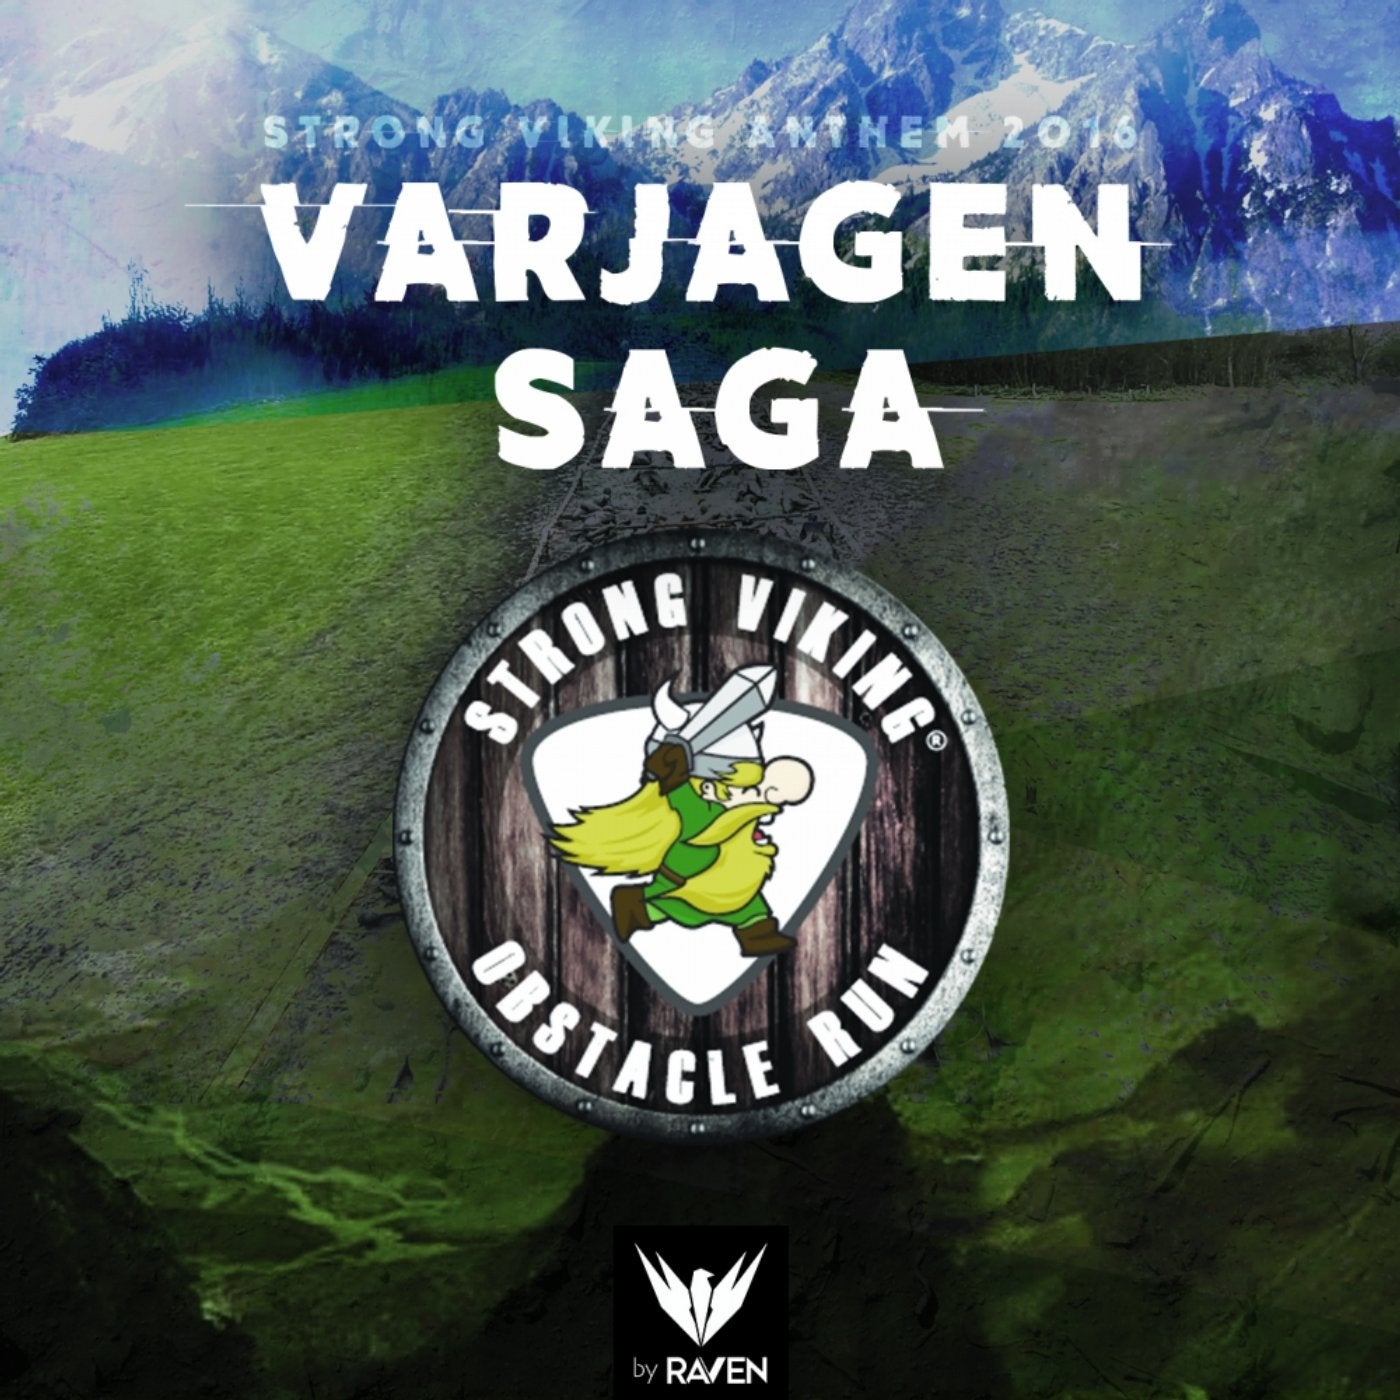 Varjagen Saga (Strong Viking Anthem 2016) (Radio Mix)